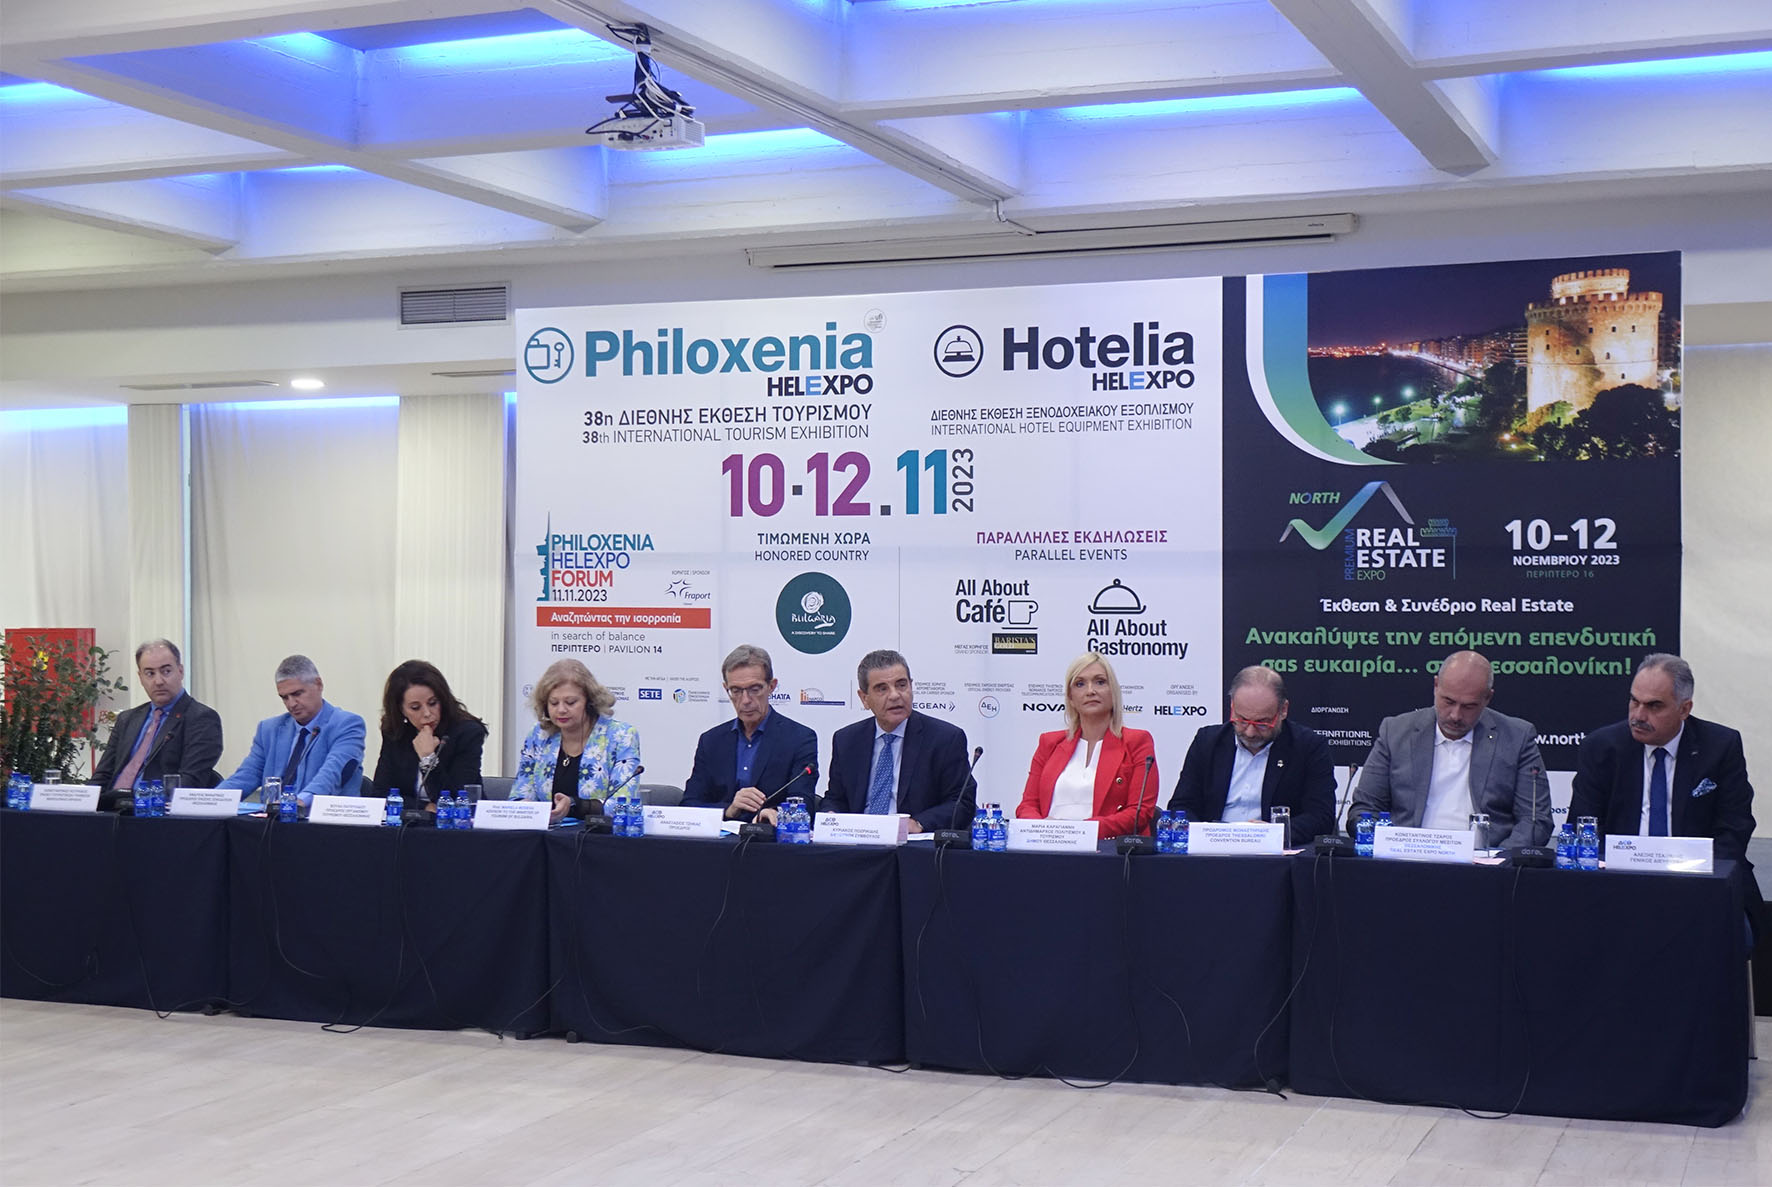 38η Διεθνής Έκθεση Τουρισμού Philoxenia με πάνω από 300 εκθέτες και τιμώμενη χώρα τη Βουλγαρία